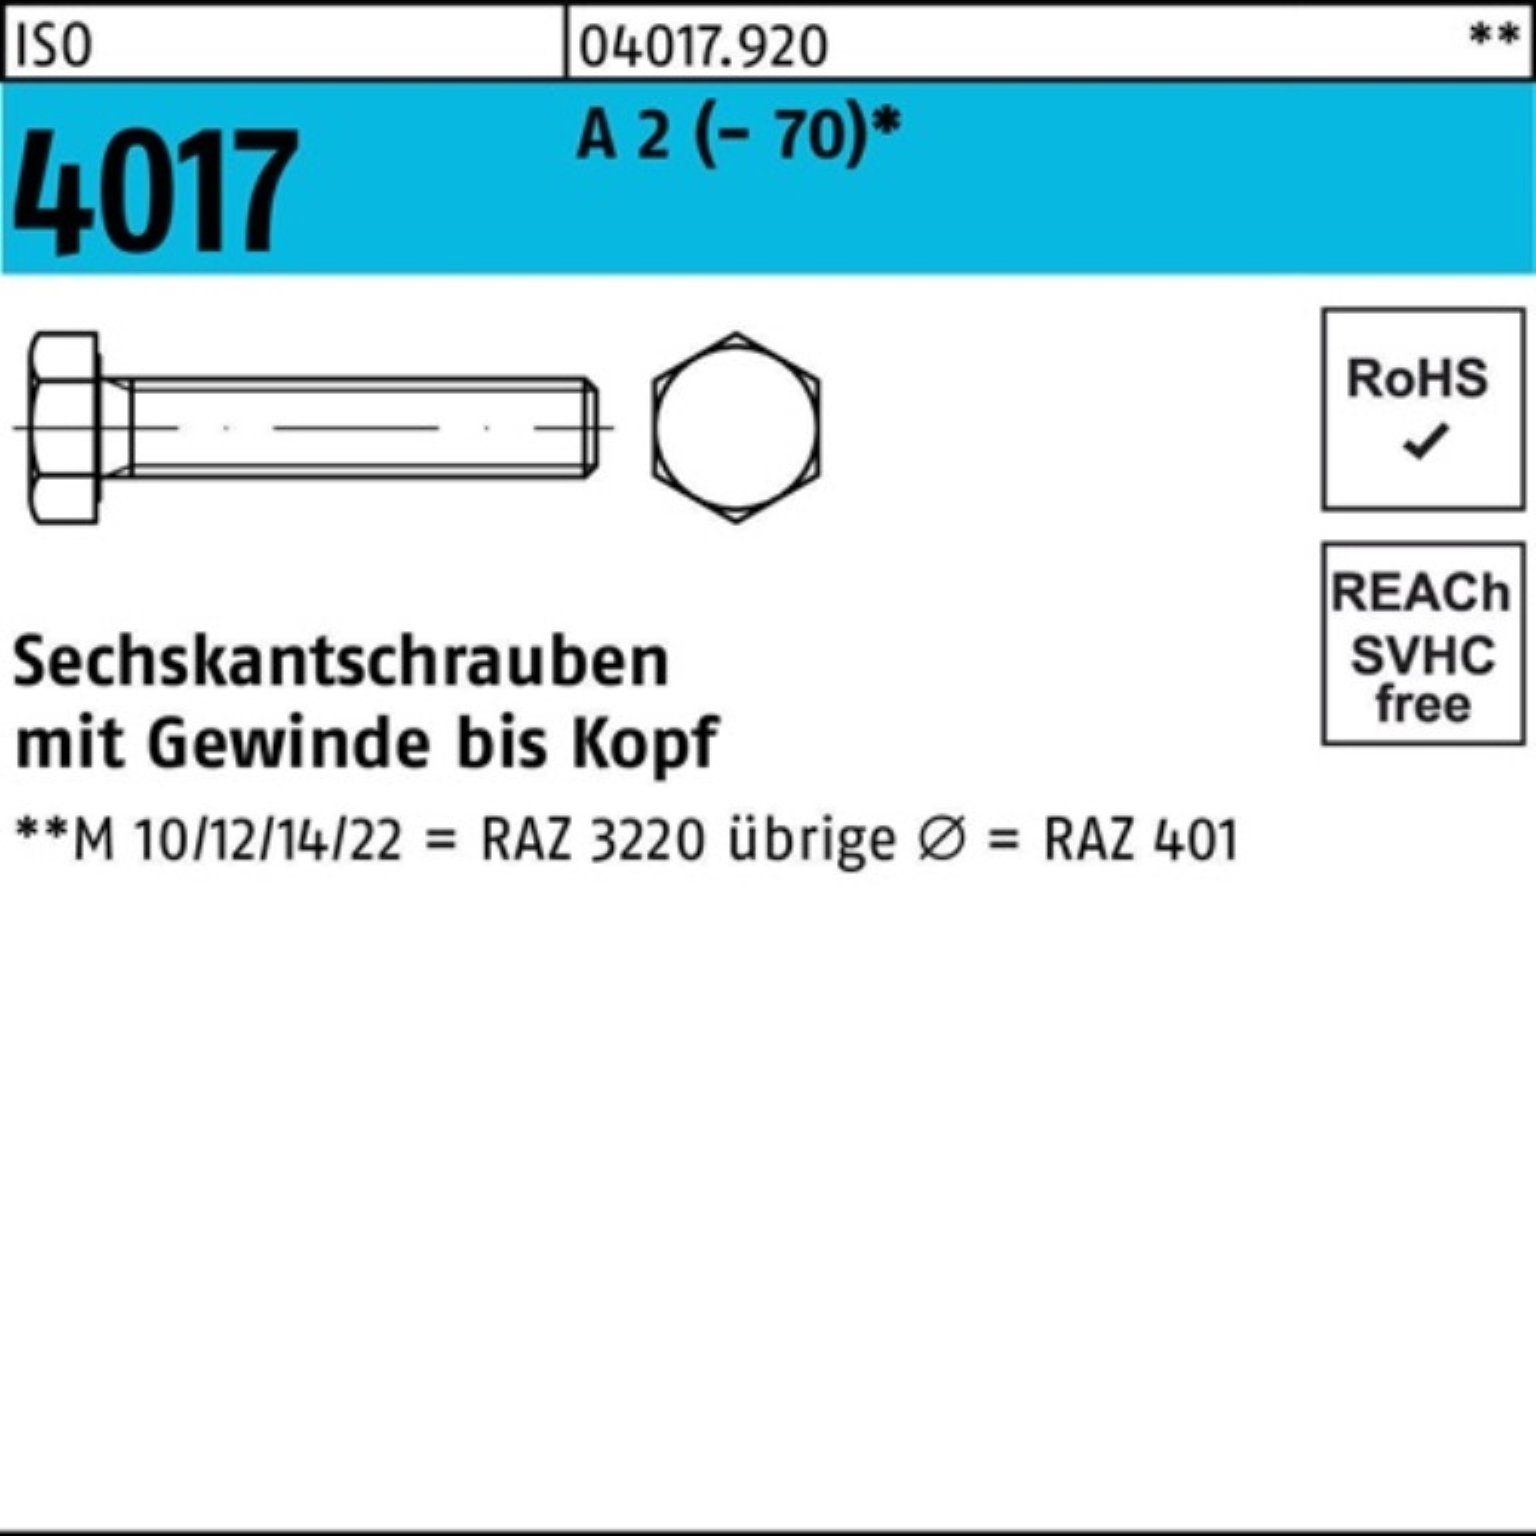 Bufab Sechskantschraube 200 VG 4017 Stück (70) 12 M8x Sechskantschraube 200er A 2 Pack ISO